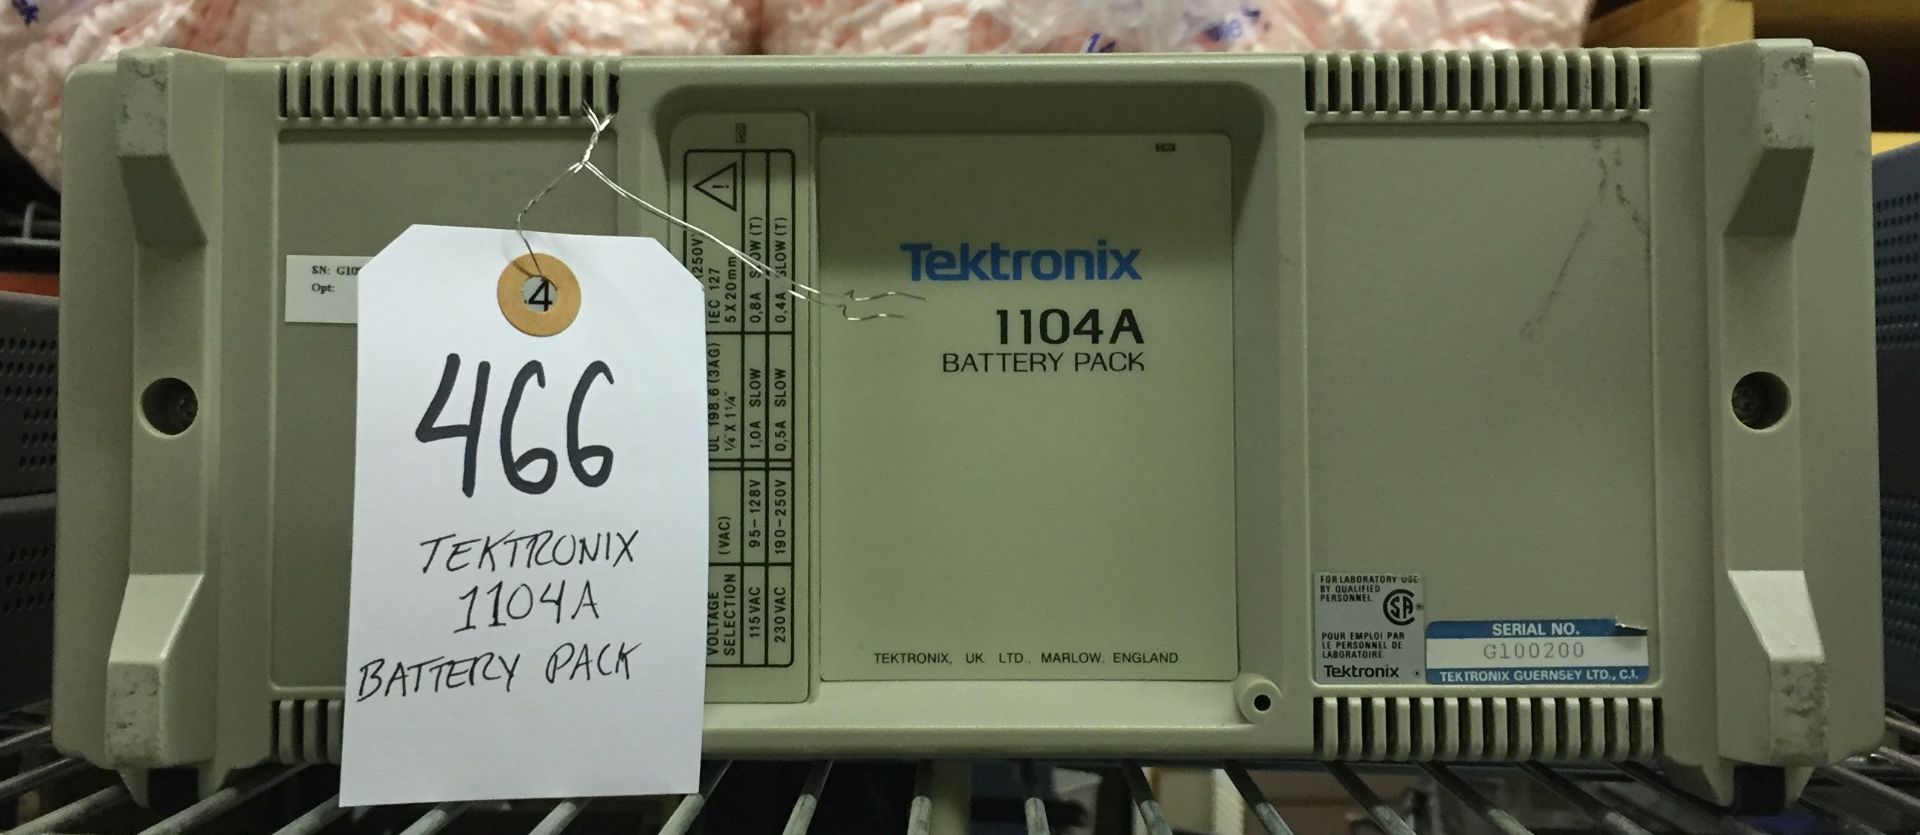 Tektronix 1104A Battery Pack